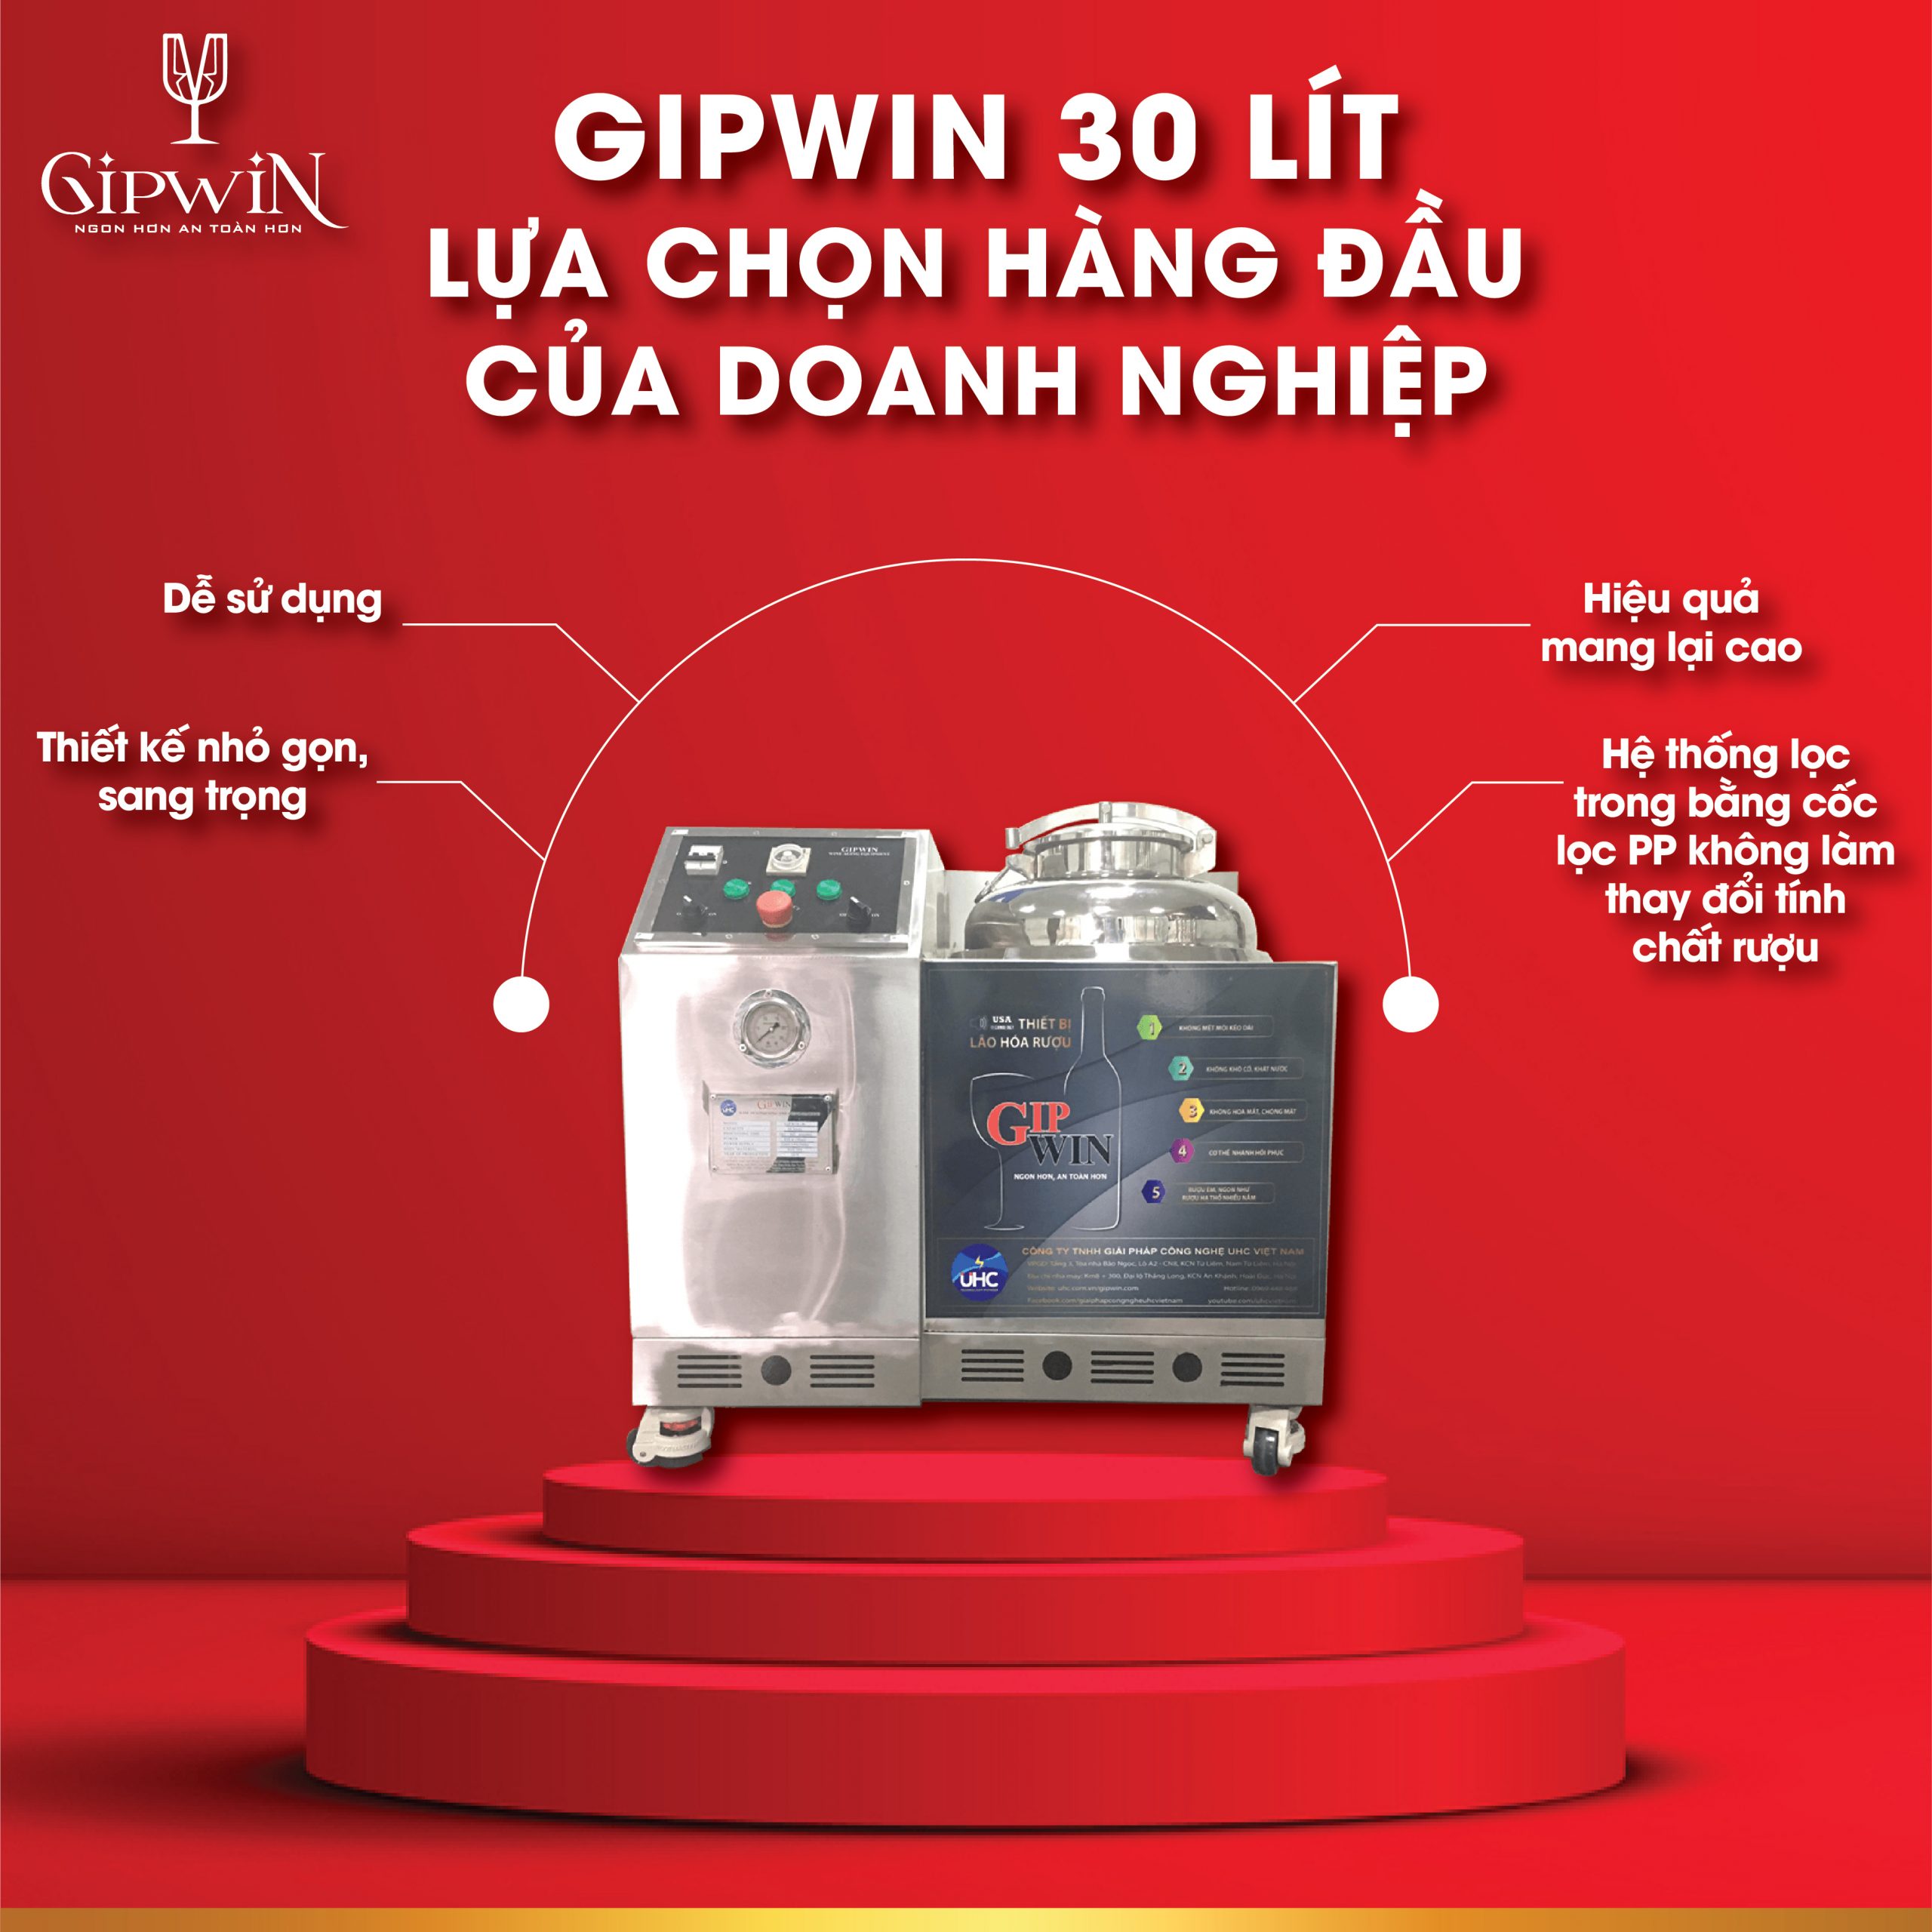 Thiết bị lão hóa rượu Gipwin được nhiều cơ sở, doanh nghiệp sử dụng.